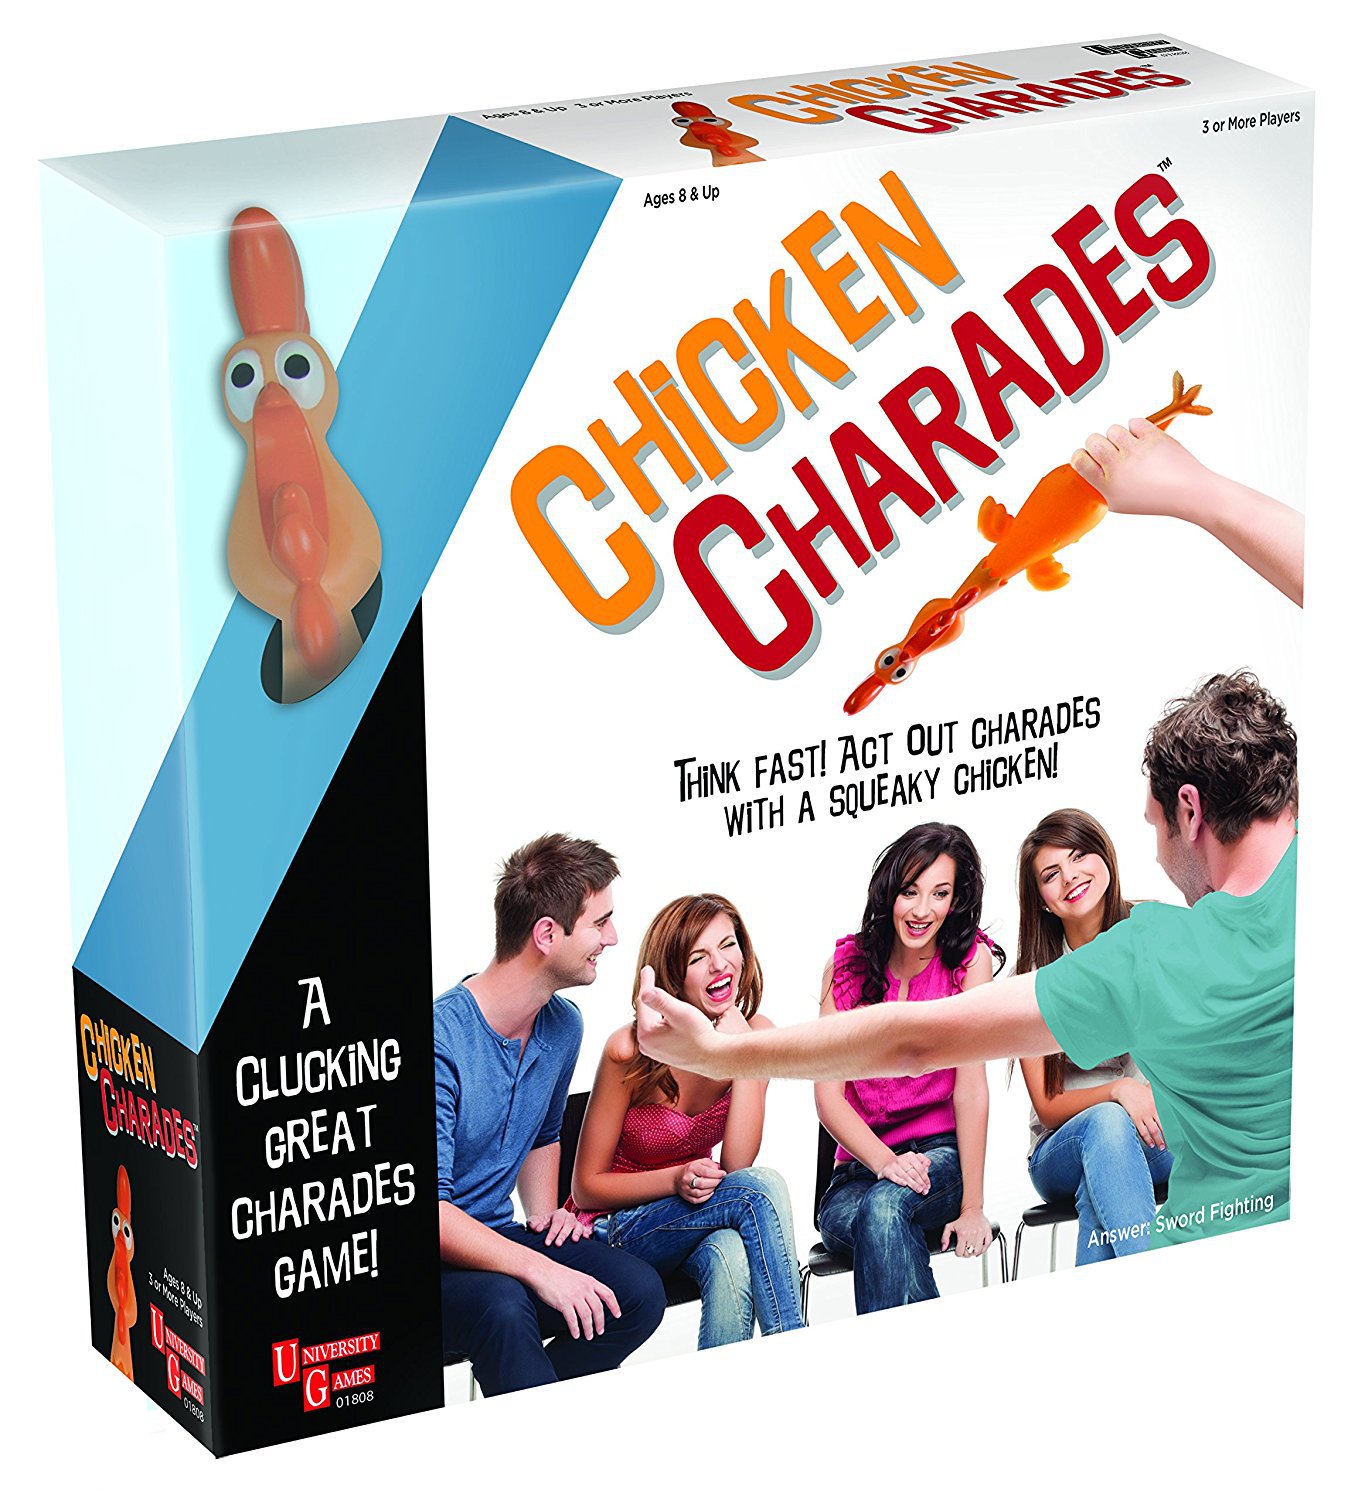 Настольная игра чикен. Charades game. Party Chicken игра. Charades фото. English hard Charades.